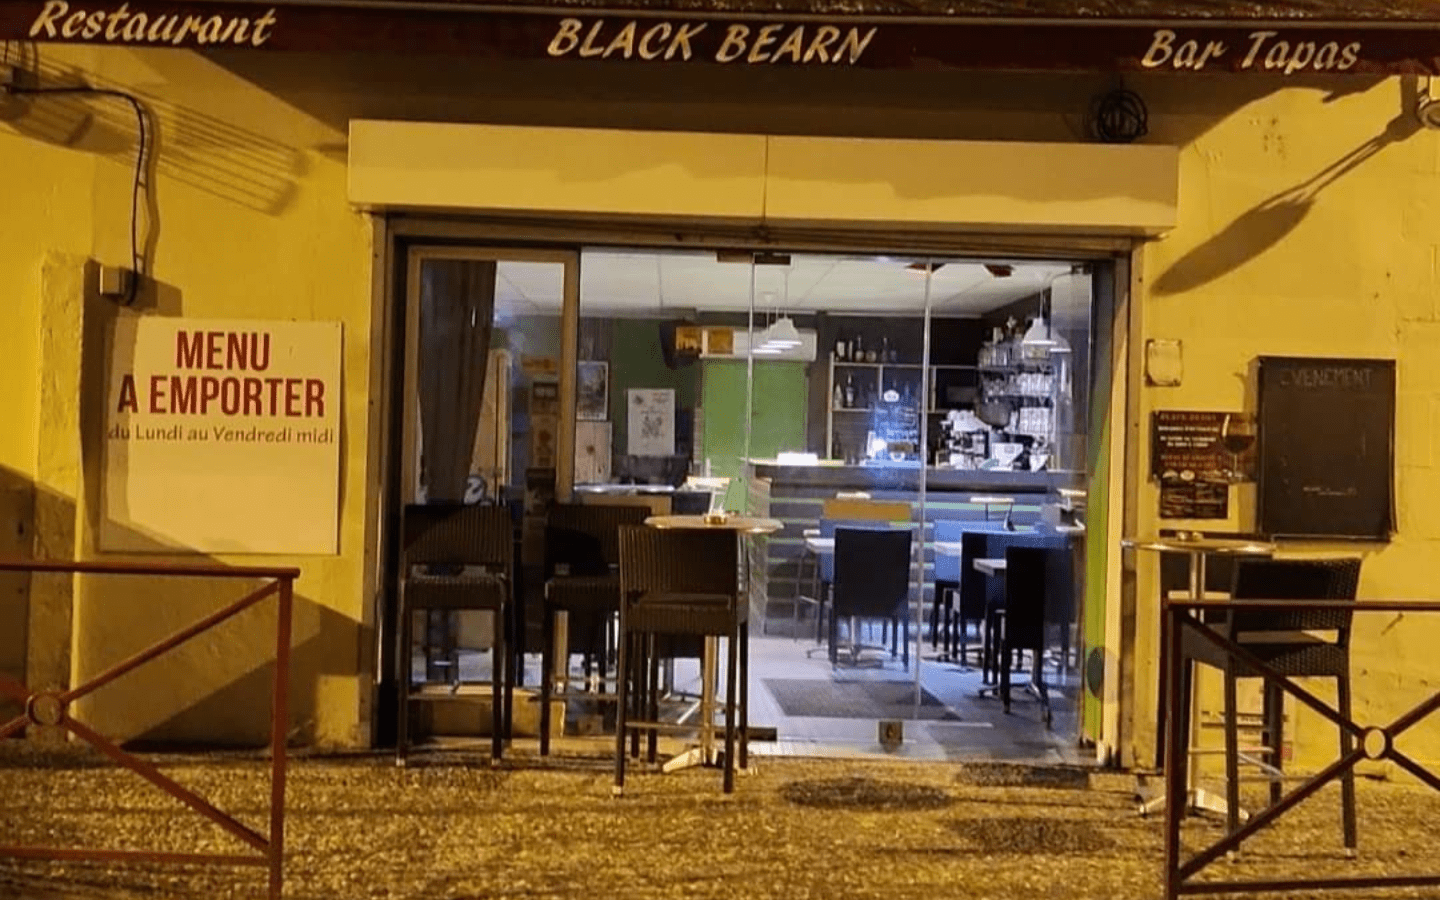 Black Béarn